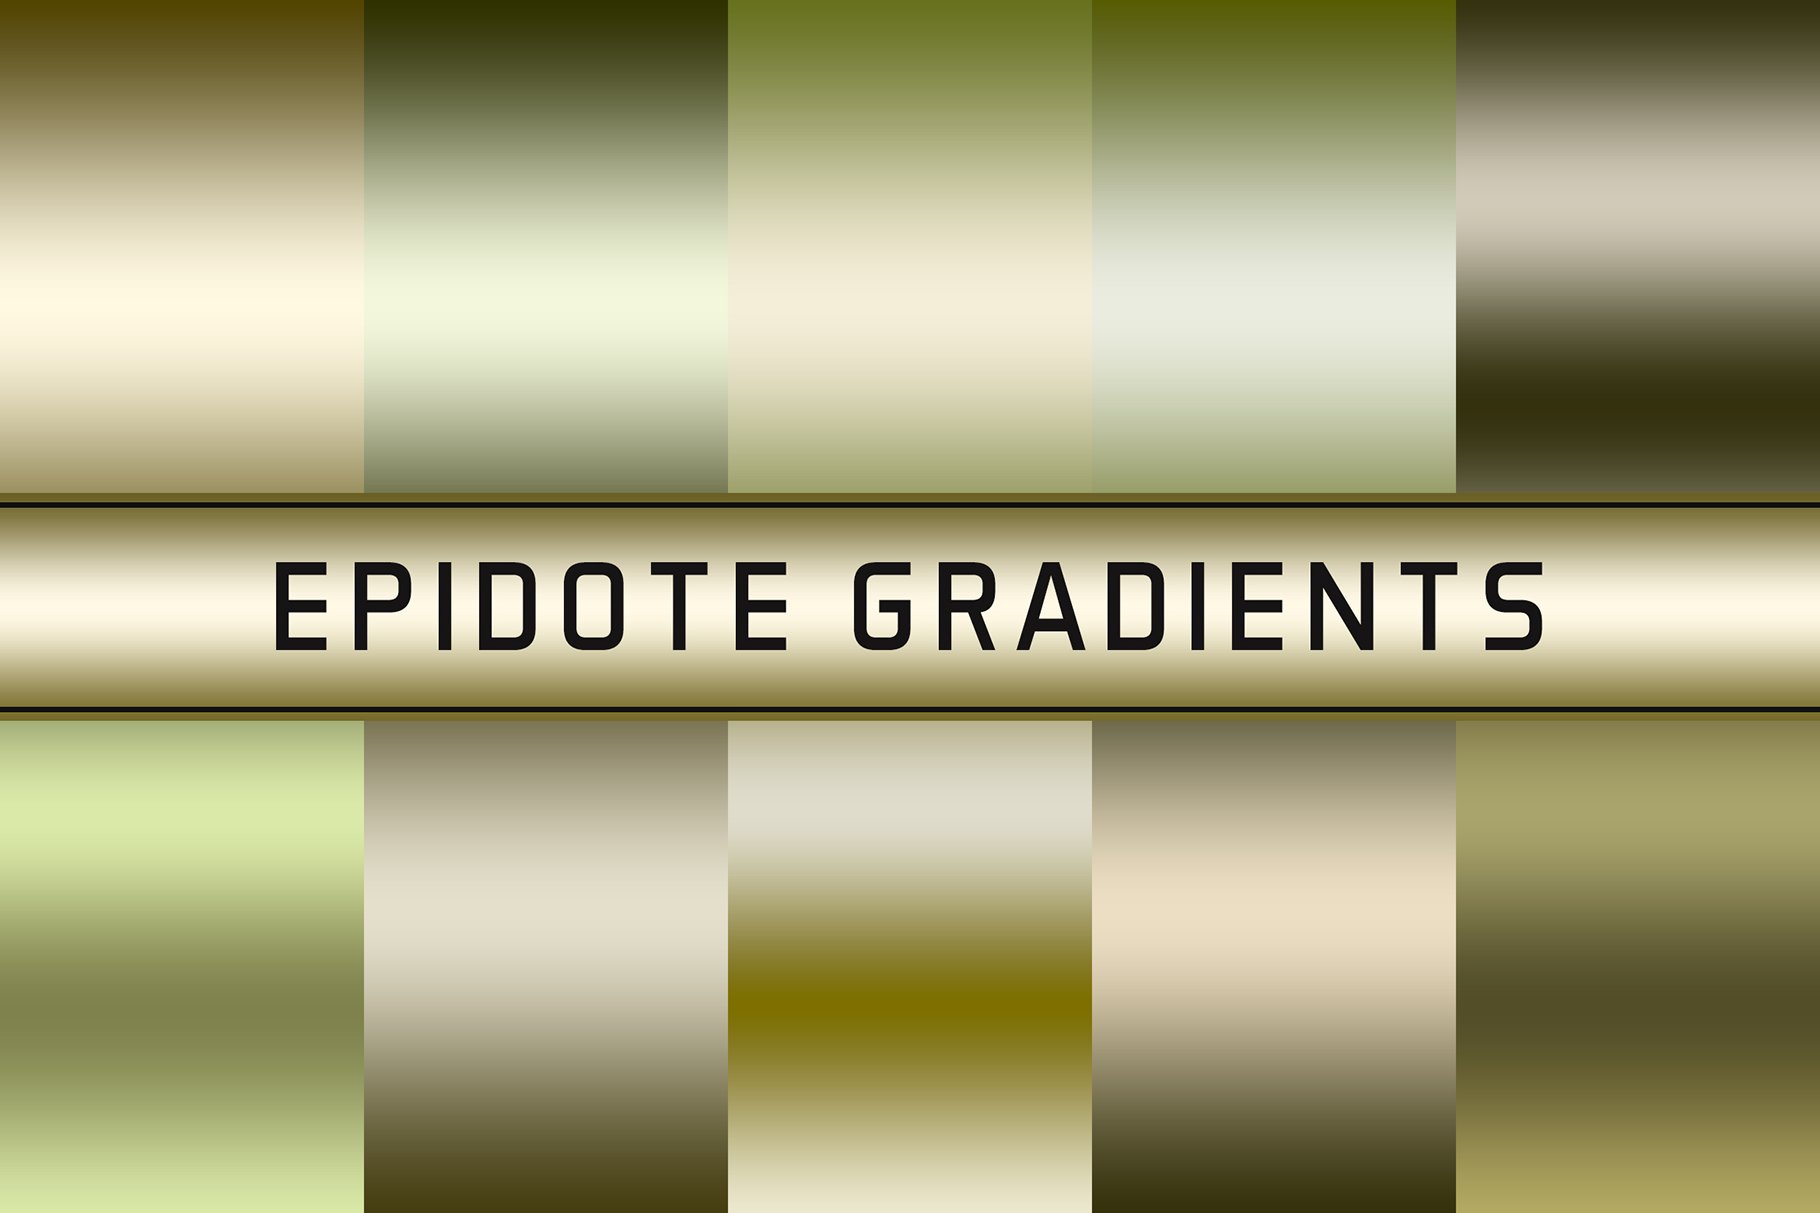 Epidote Gradients cover image.